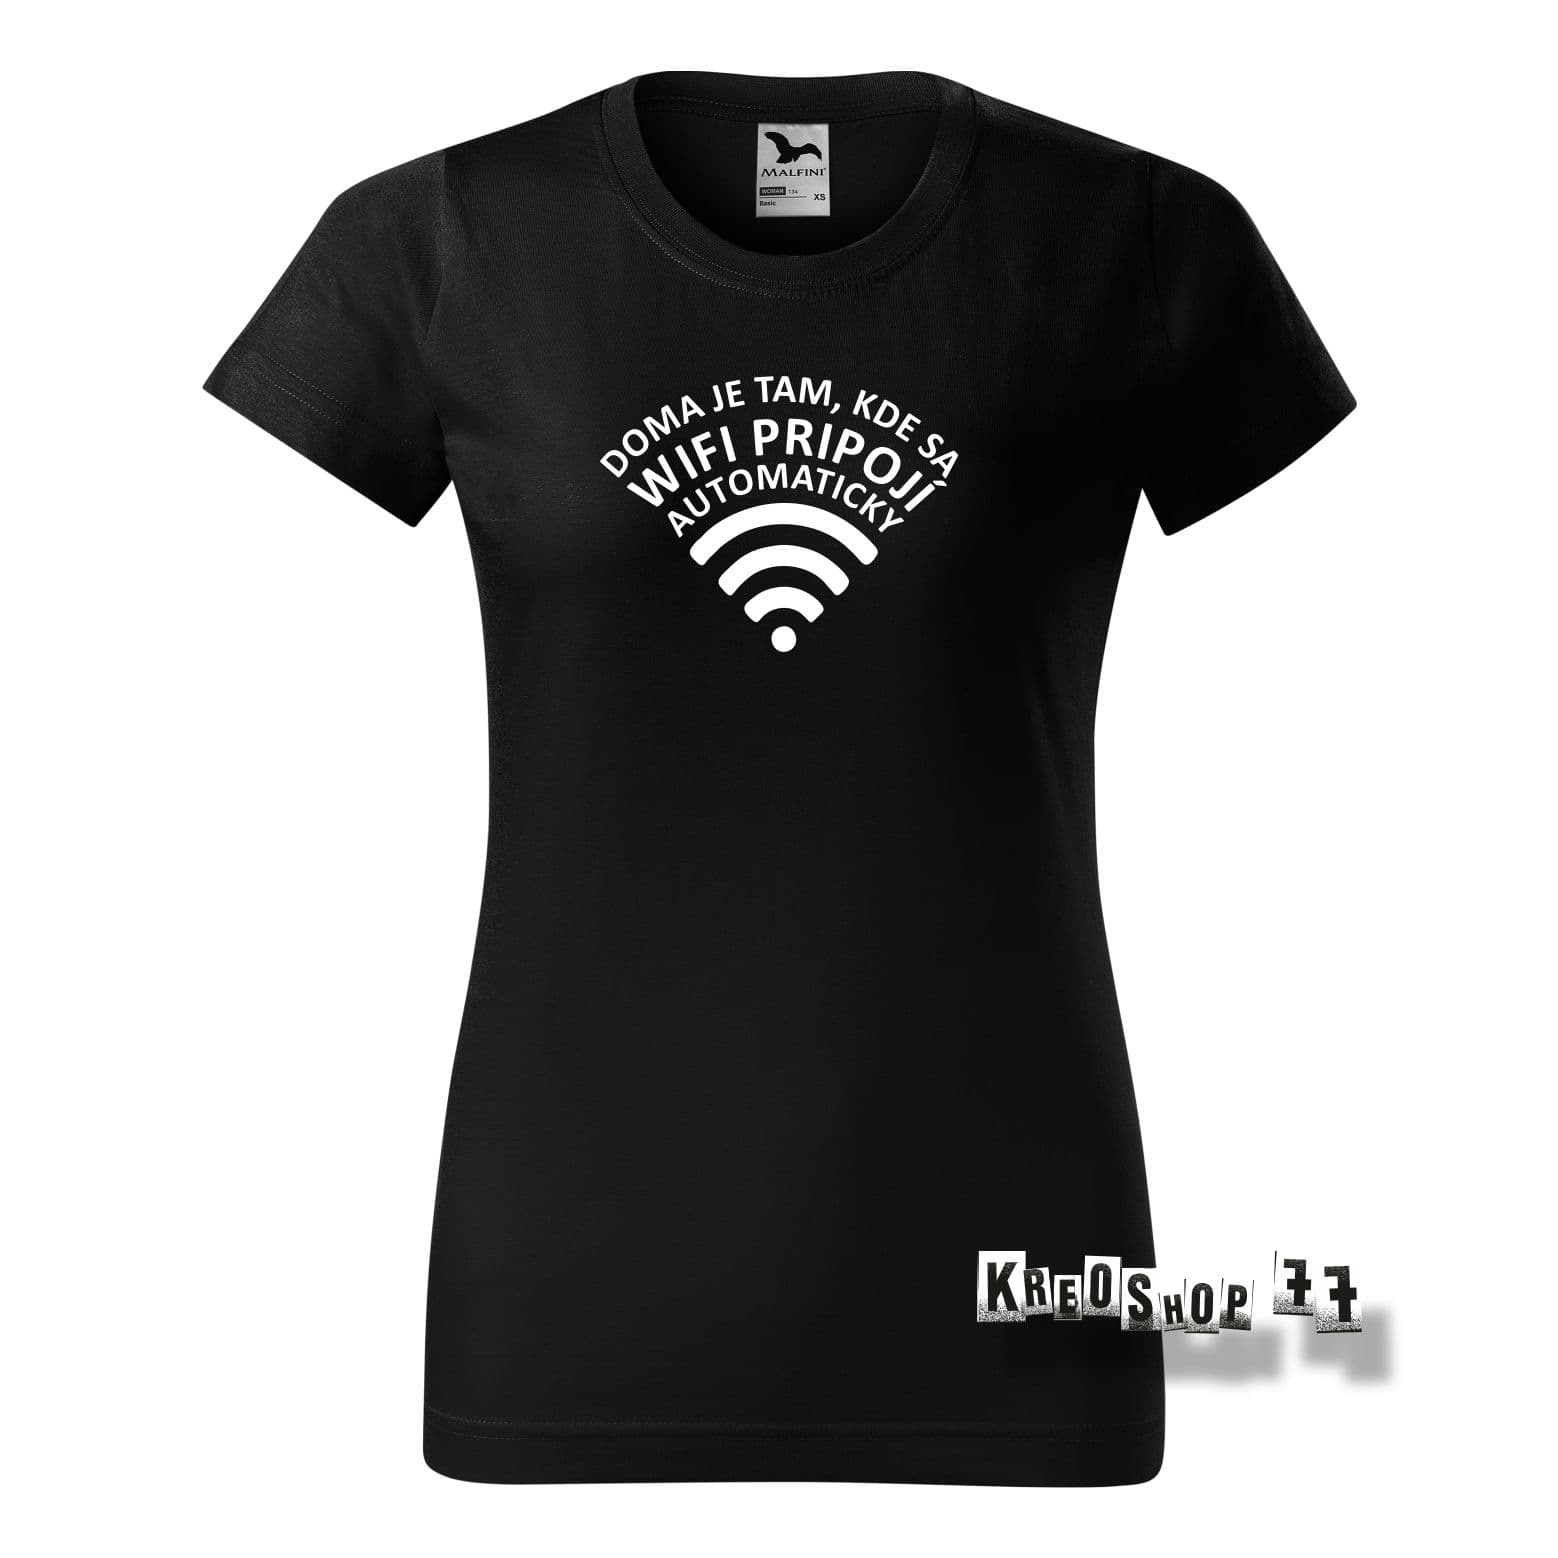 Dámske tričko - Doma je tam, kde sa wifi pripojí automaticky - Čierne